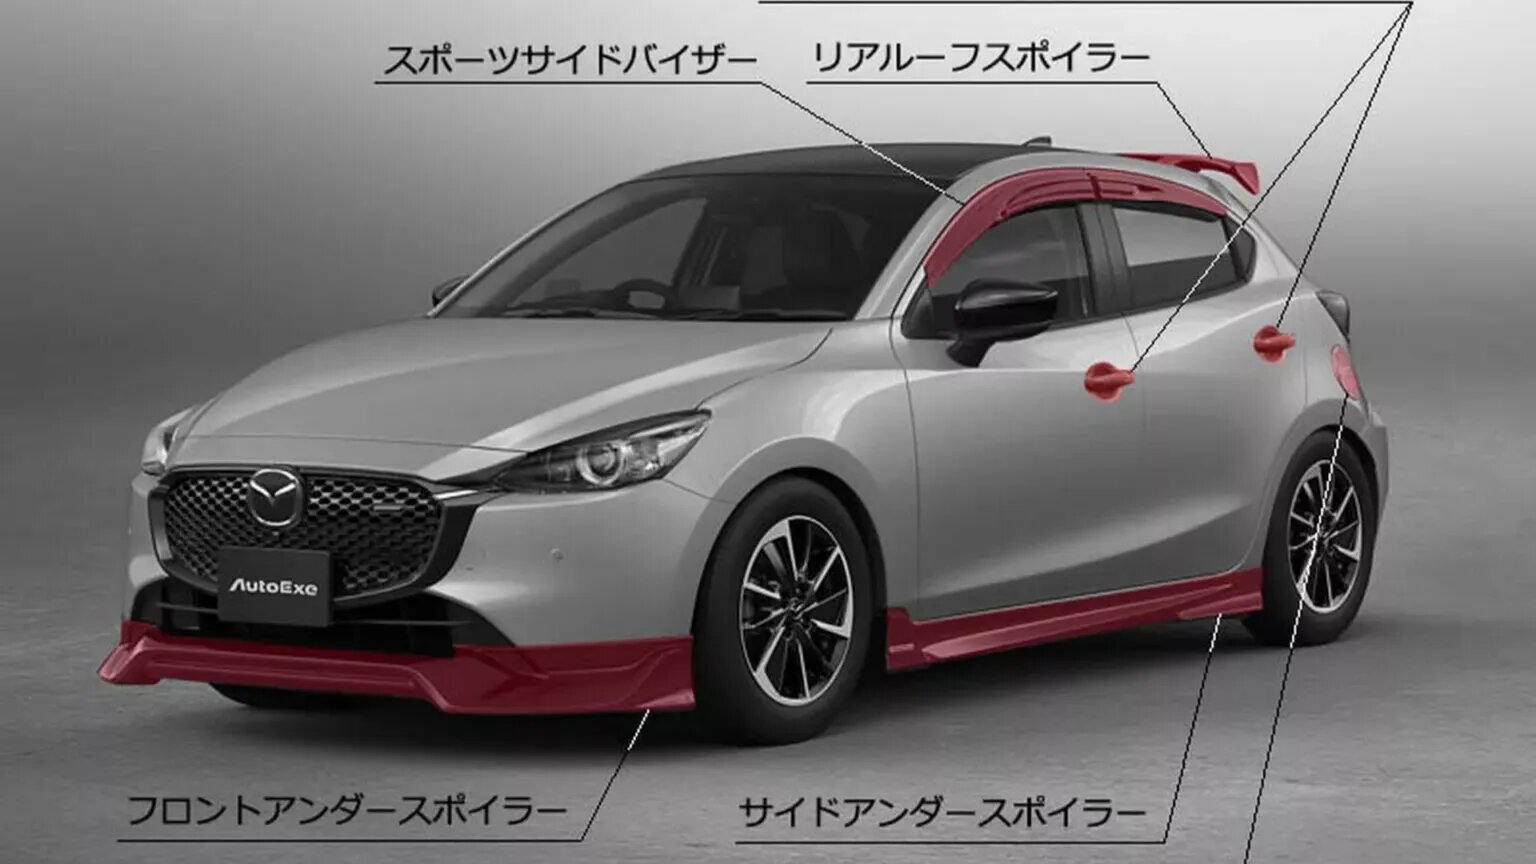 Японские тюнеры слегка доработали ситикар Mazda2. Теперь он похож на хот-хэтч